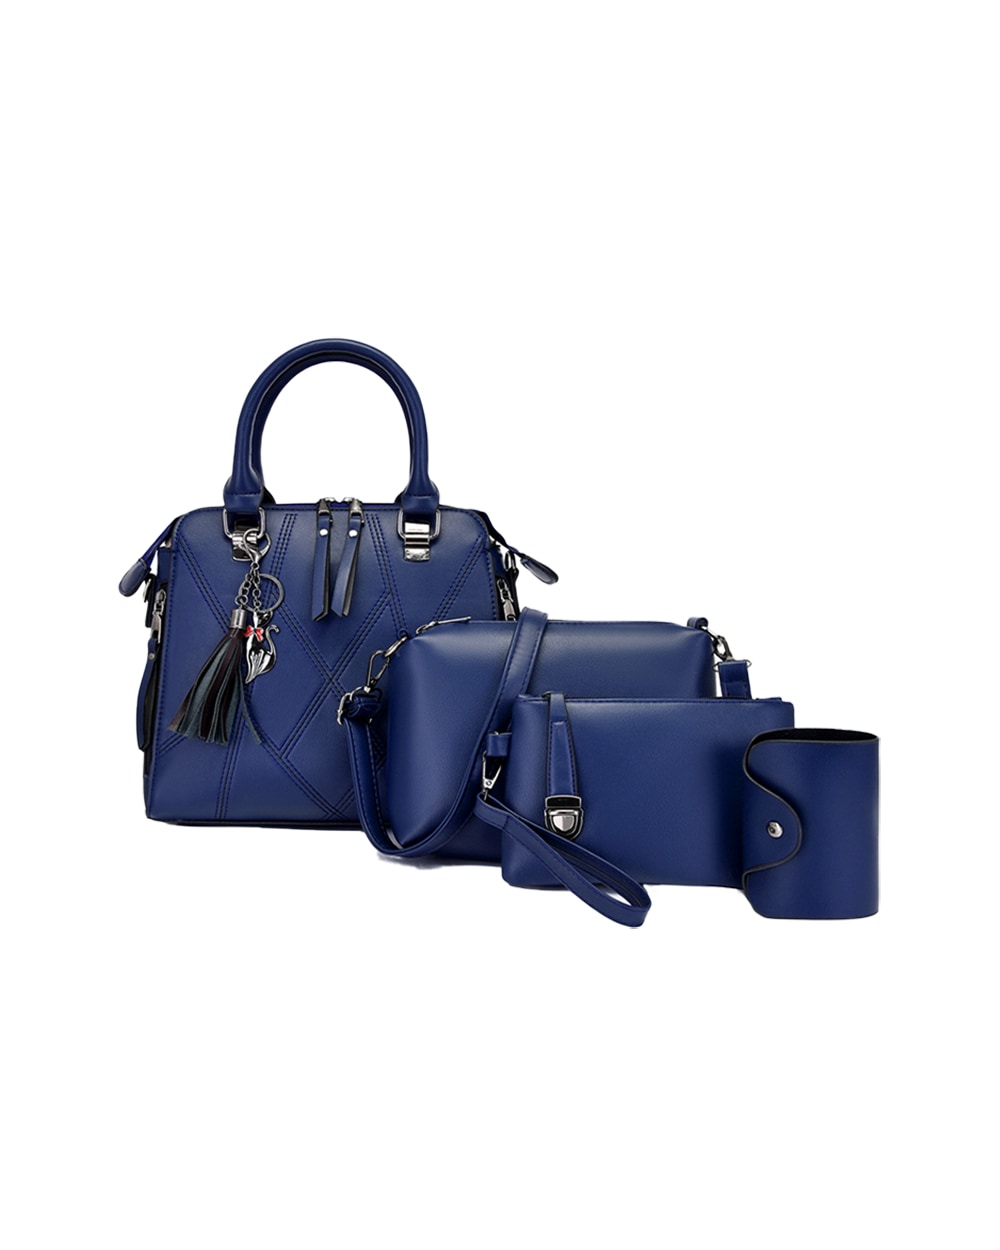 4 piece indigo handbag set